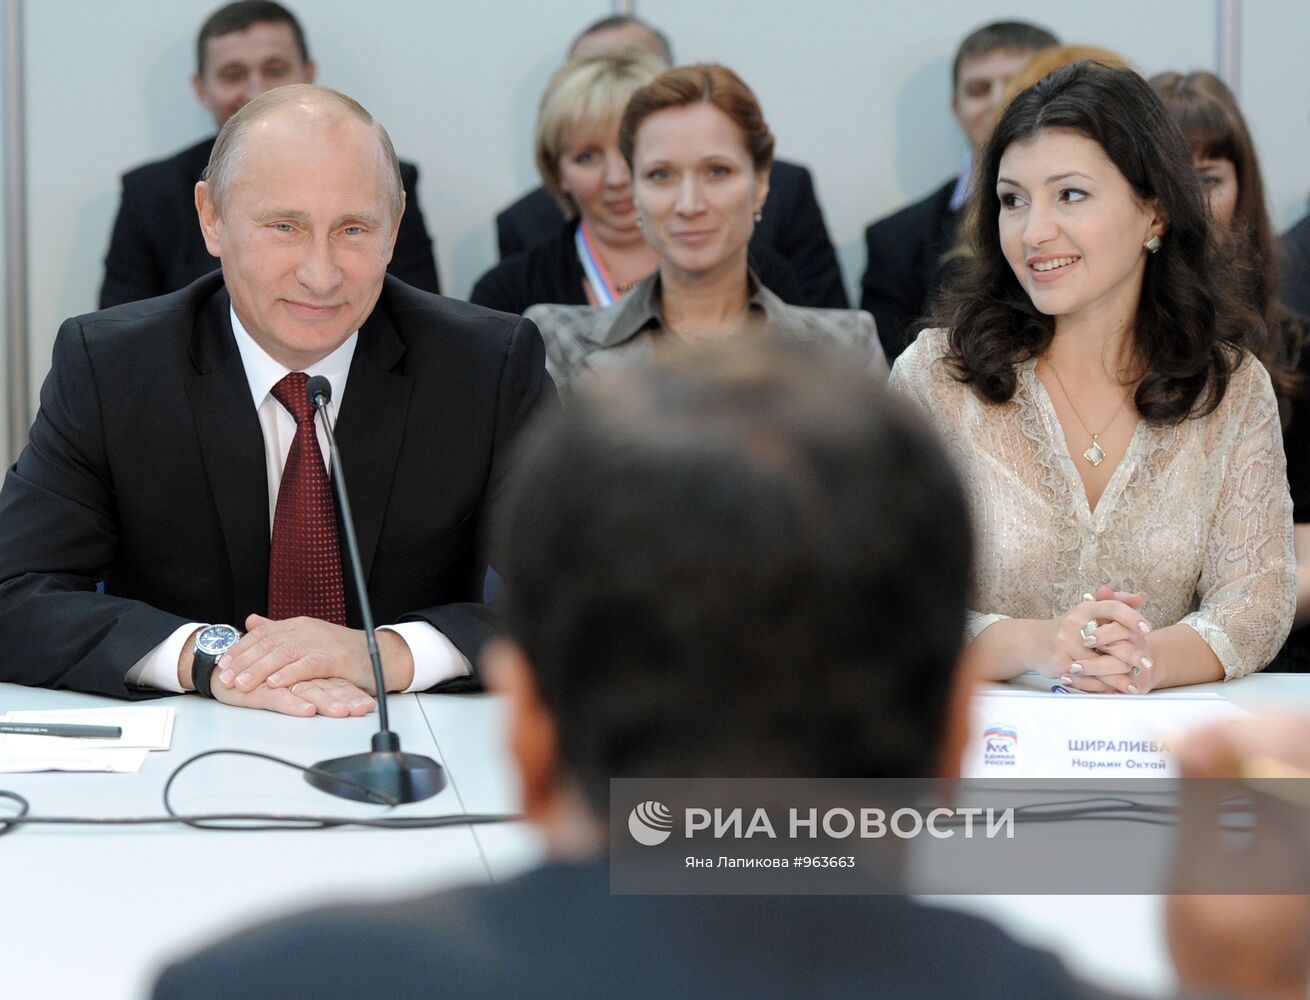 В.Путин принимает участие в XII съезде партии "Единая Россия"